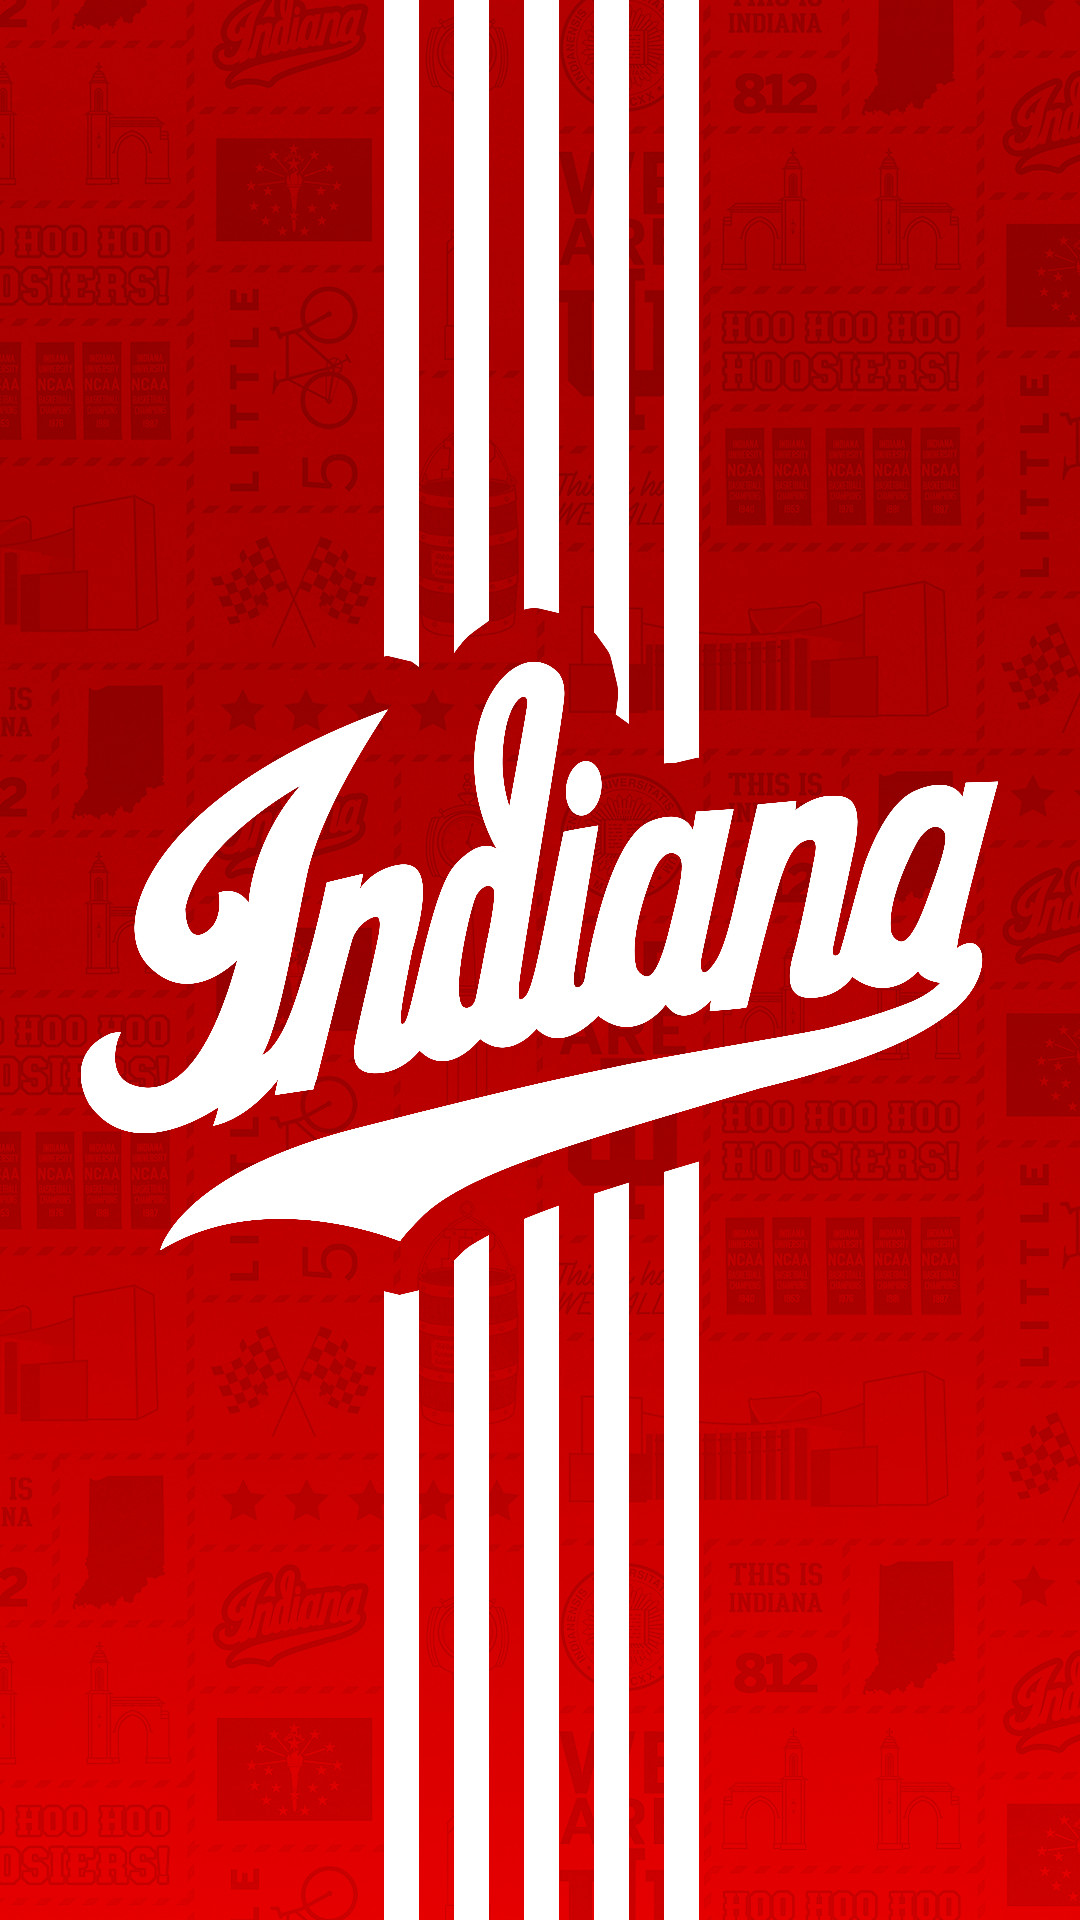 Indiana University Hoosiers 1680x1050 Wallpaper  Indiana hoosiers  basketball Indiana university Indiana hoosiers